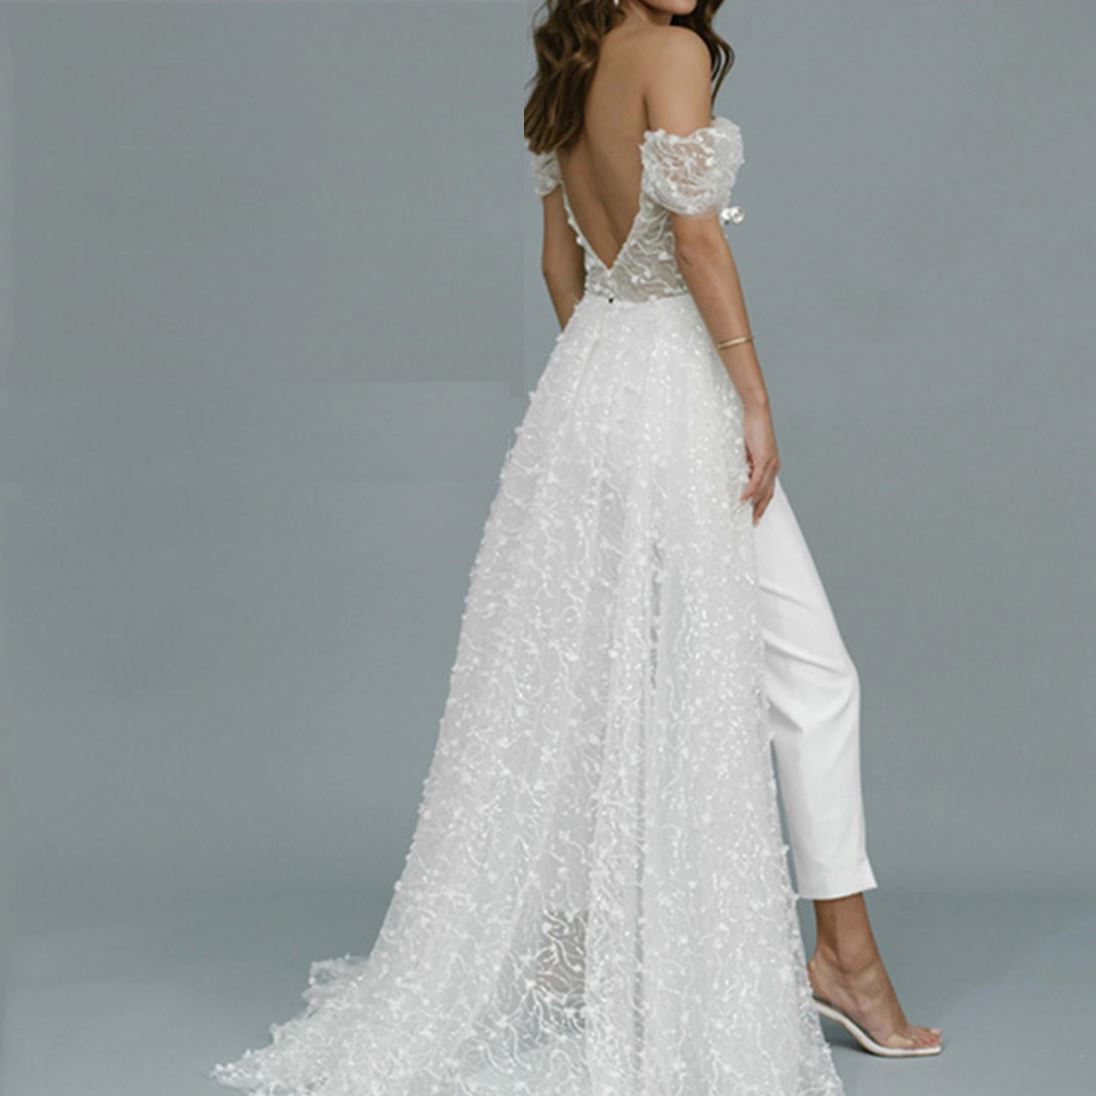 Jumpsuit with Long Train Lace 3D Appliqued Sequins Wedding Dress Classic Wedding Dresses BlissGown 